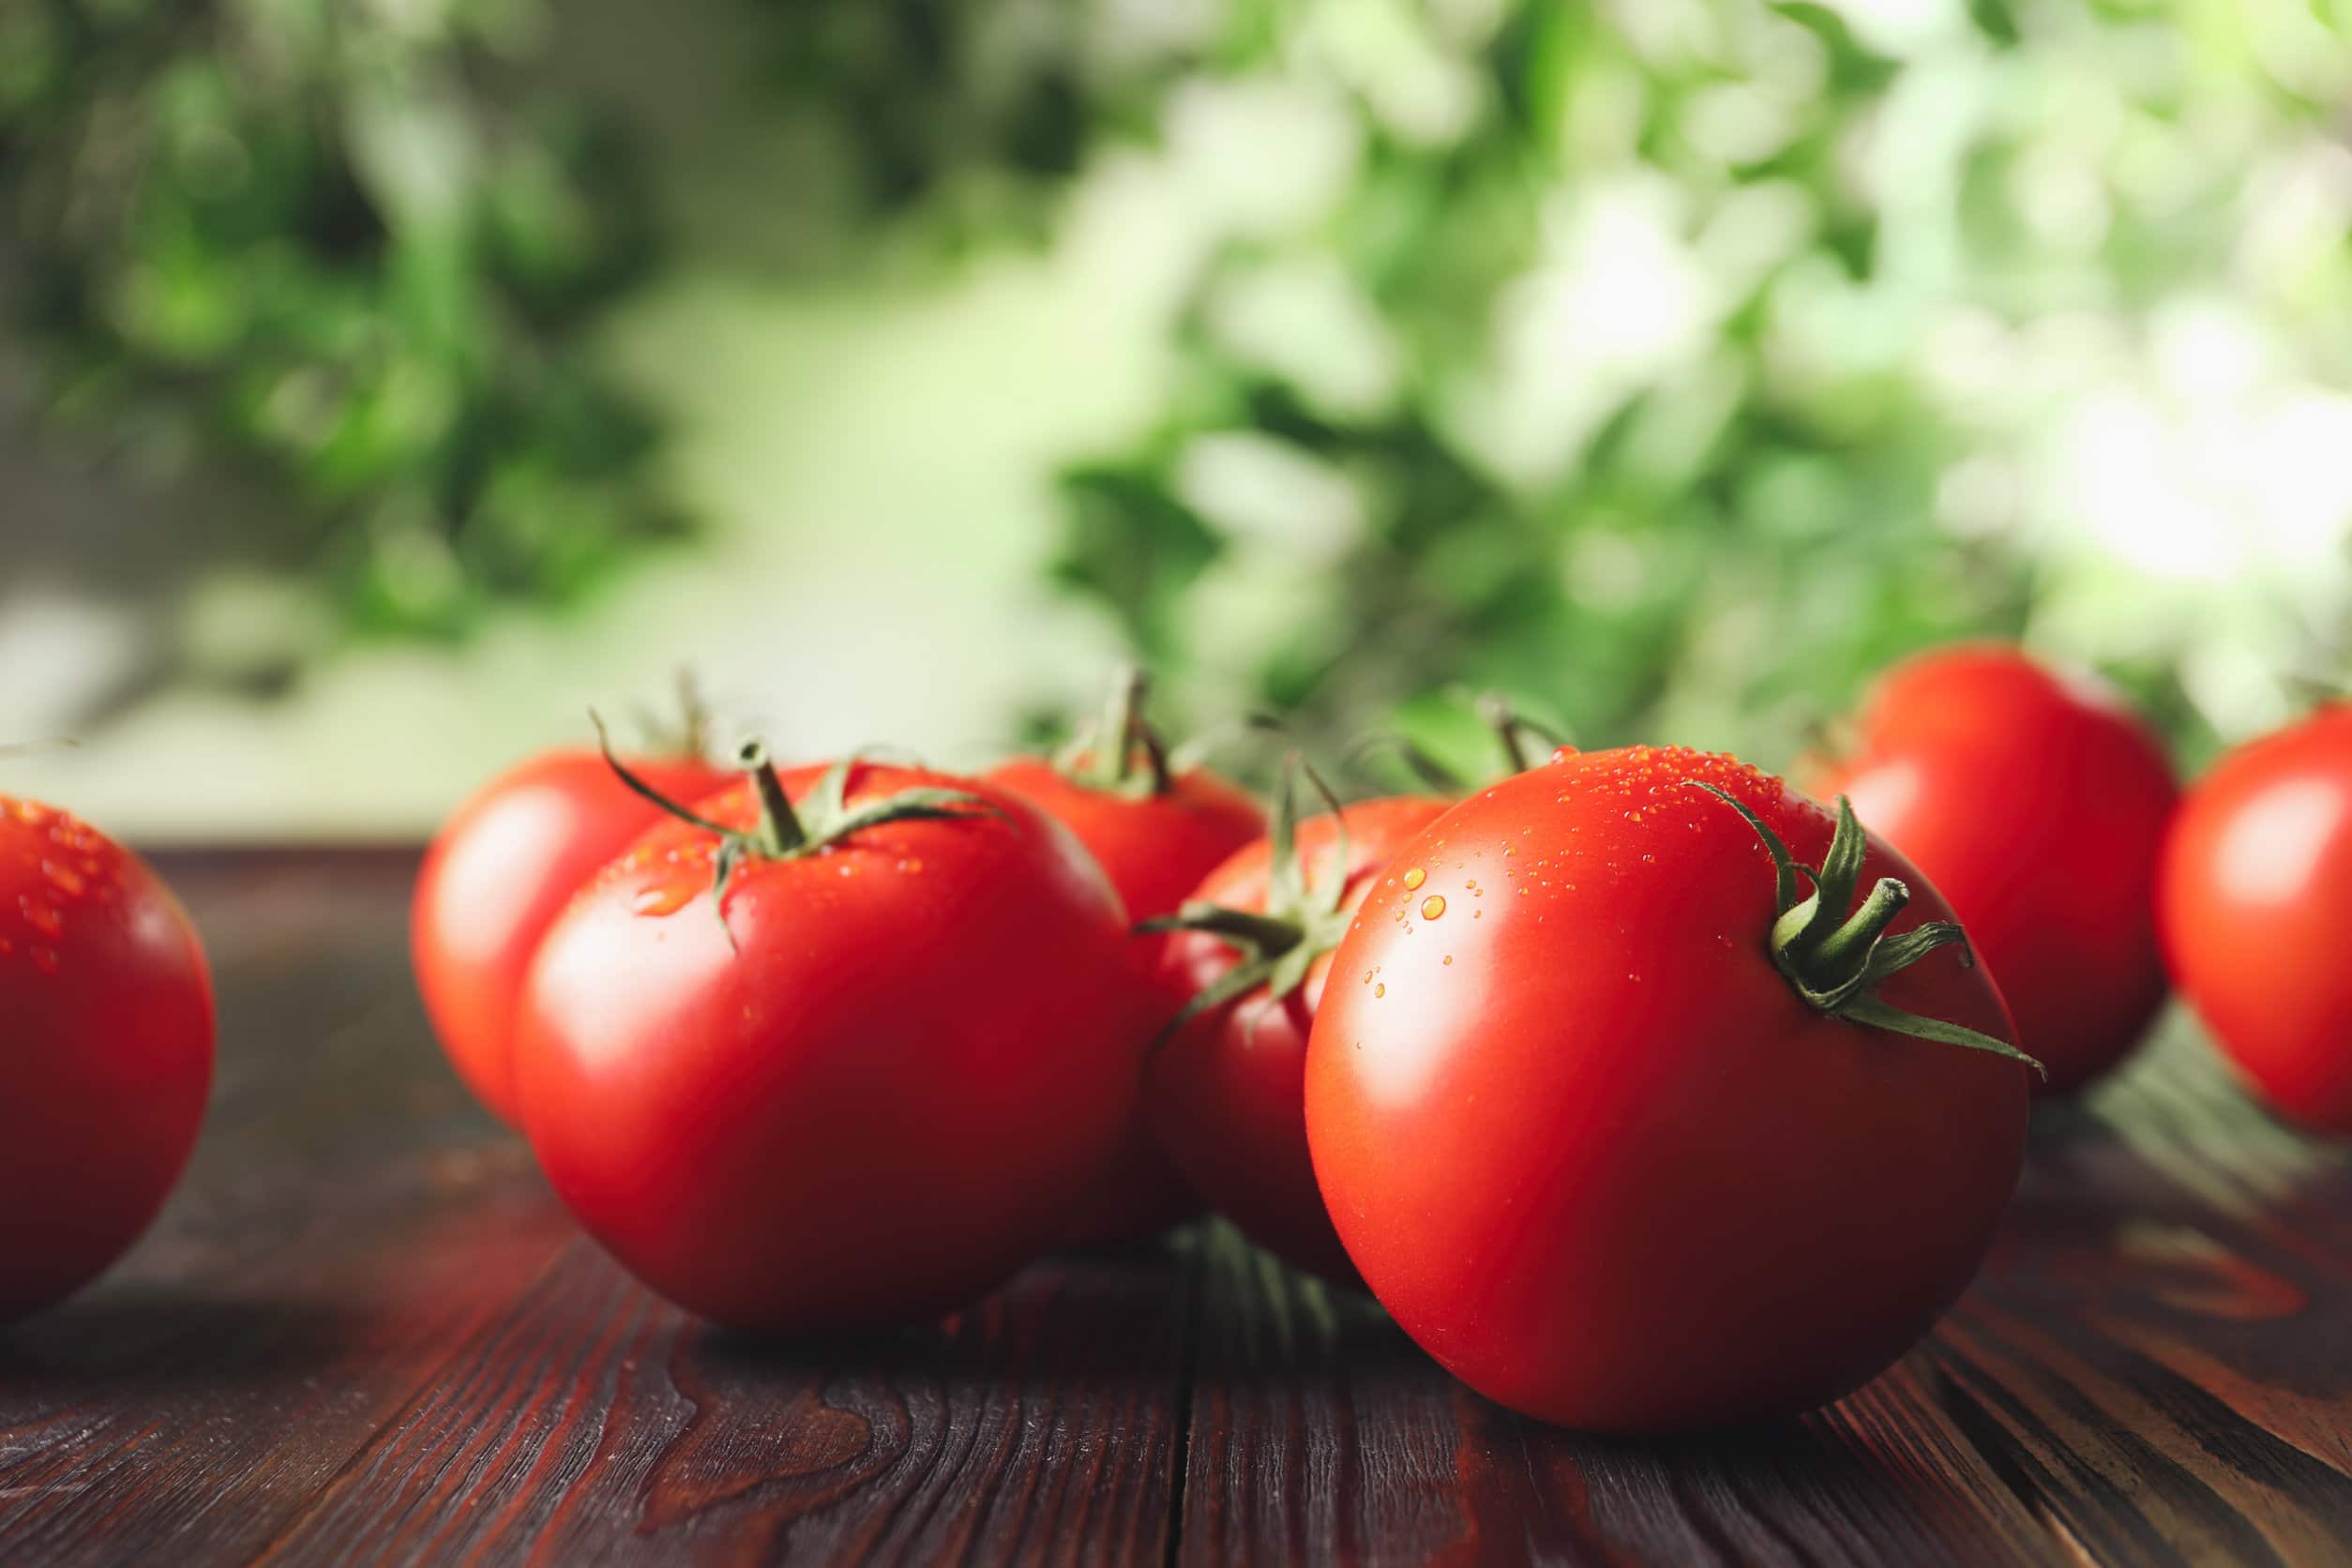 Des tomates génétiquement modifiées pour se relaxer et faire baisser sa pression artérielle